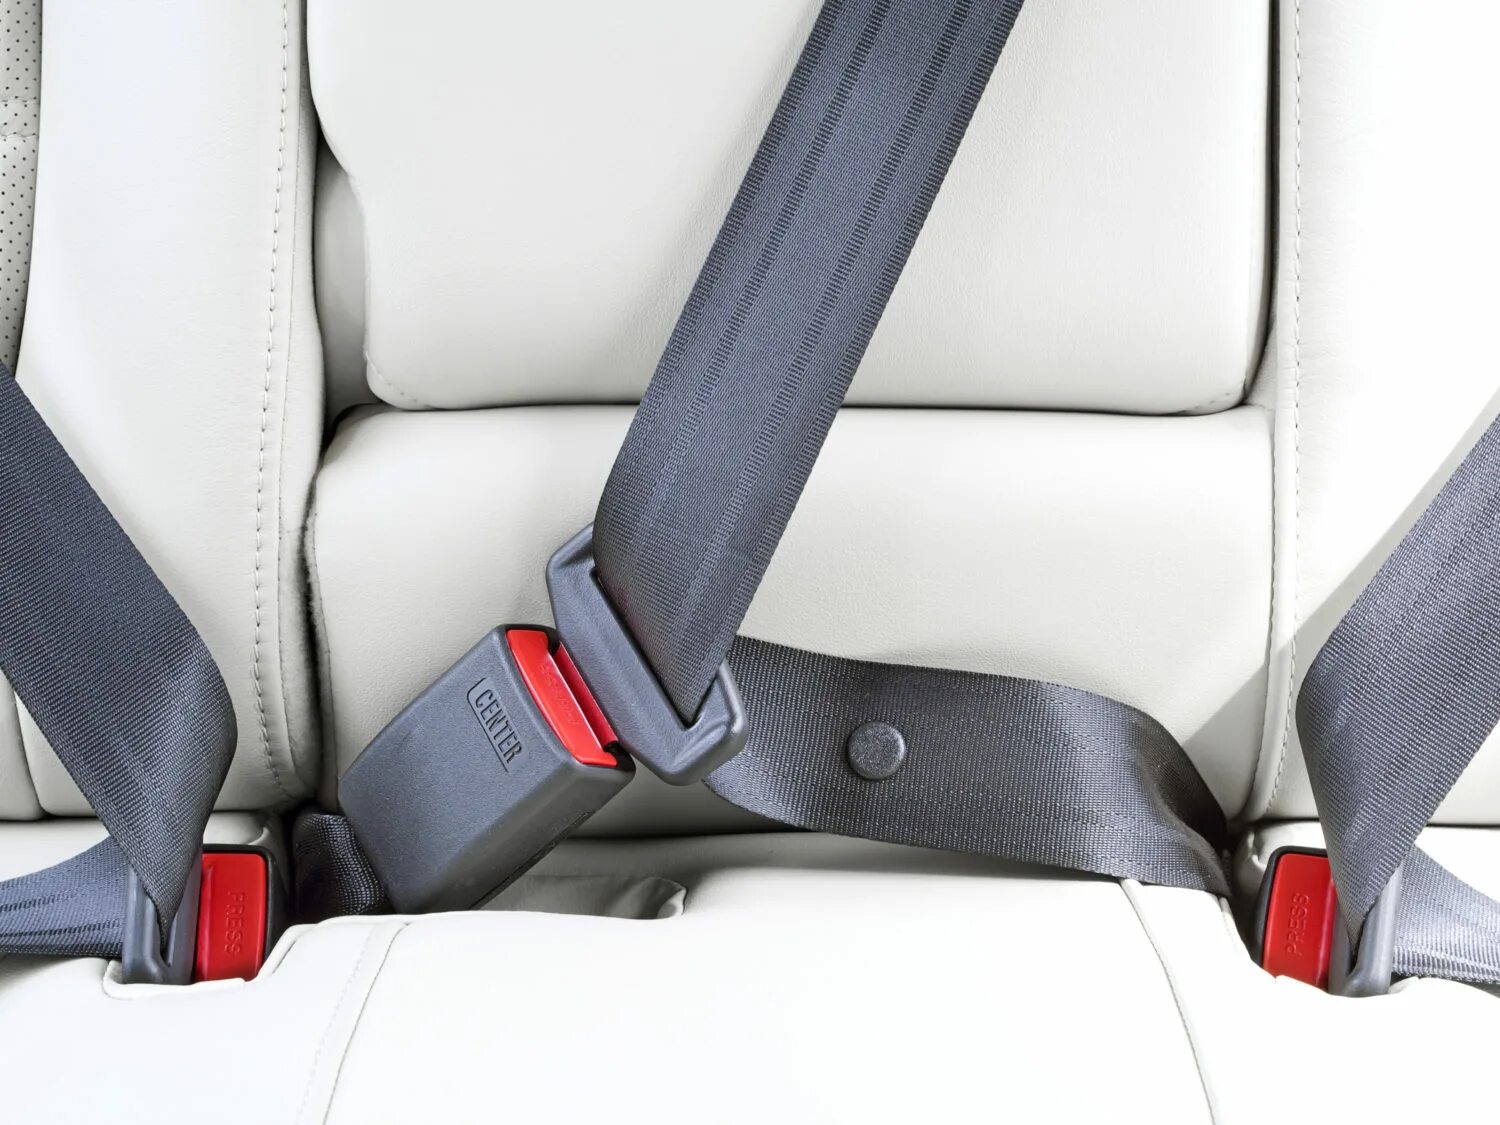 Безопасность в машине на заднем сиденье. Seat Belt, Safety 95.241-210. Wear a Seat Belt. VAG 8 гр., VW, Seat Belt. Ремни безопасности пассажиров задних рядов т4.